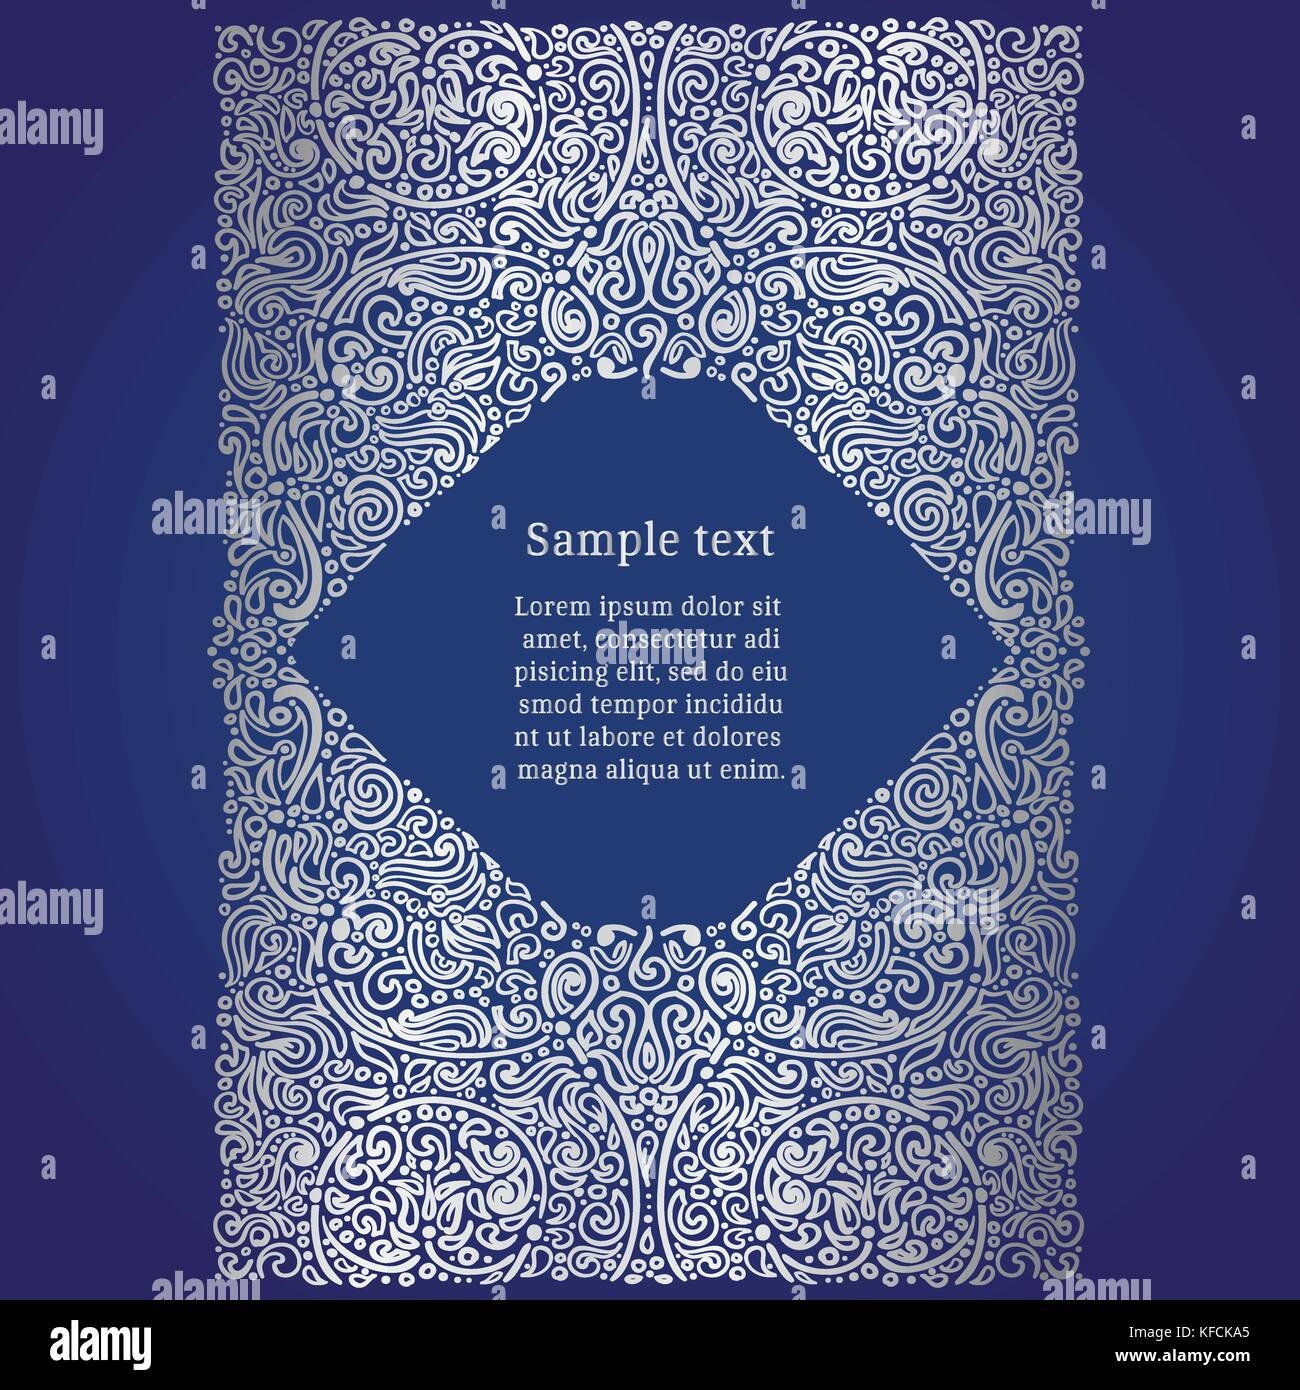 Prunkvolle orientalische Einladungskarte, Silberfolie auf Blau, Vektor, Abbildung Stock Vektor